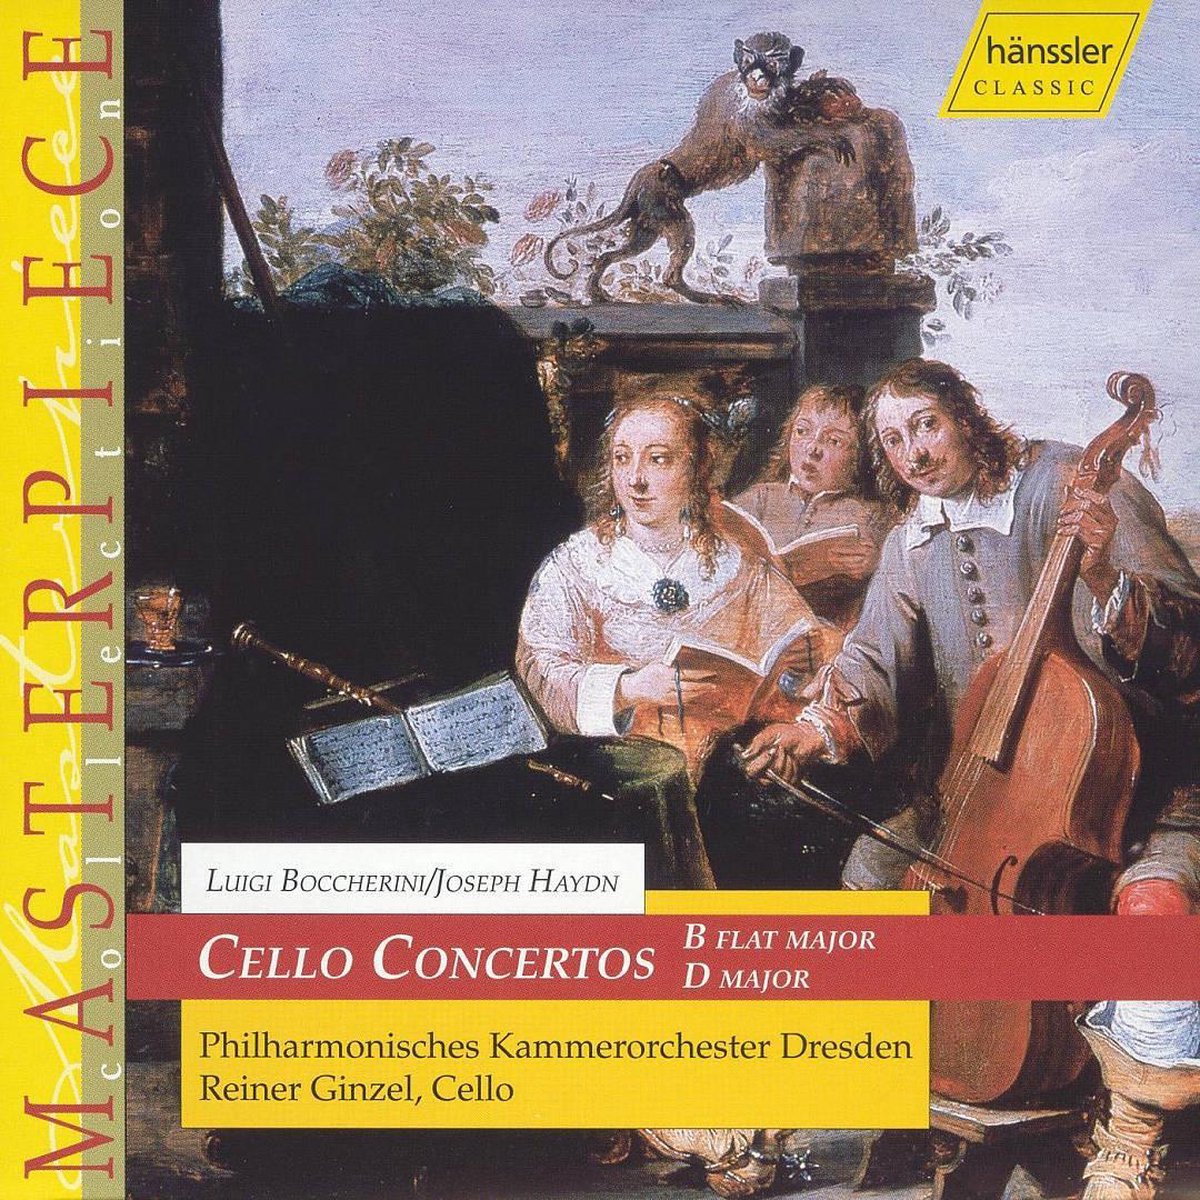 Luigi Boccherini, Joseph Haydn: Cello Concertos - Reiner Ginzel